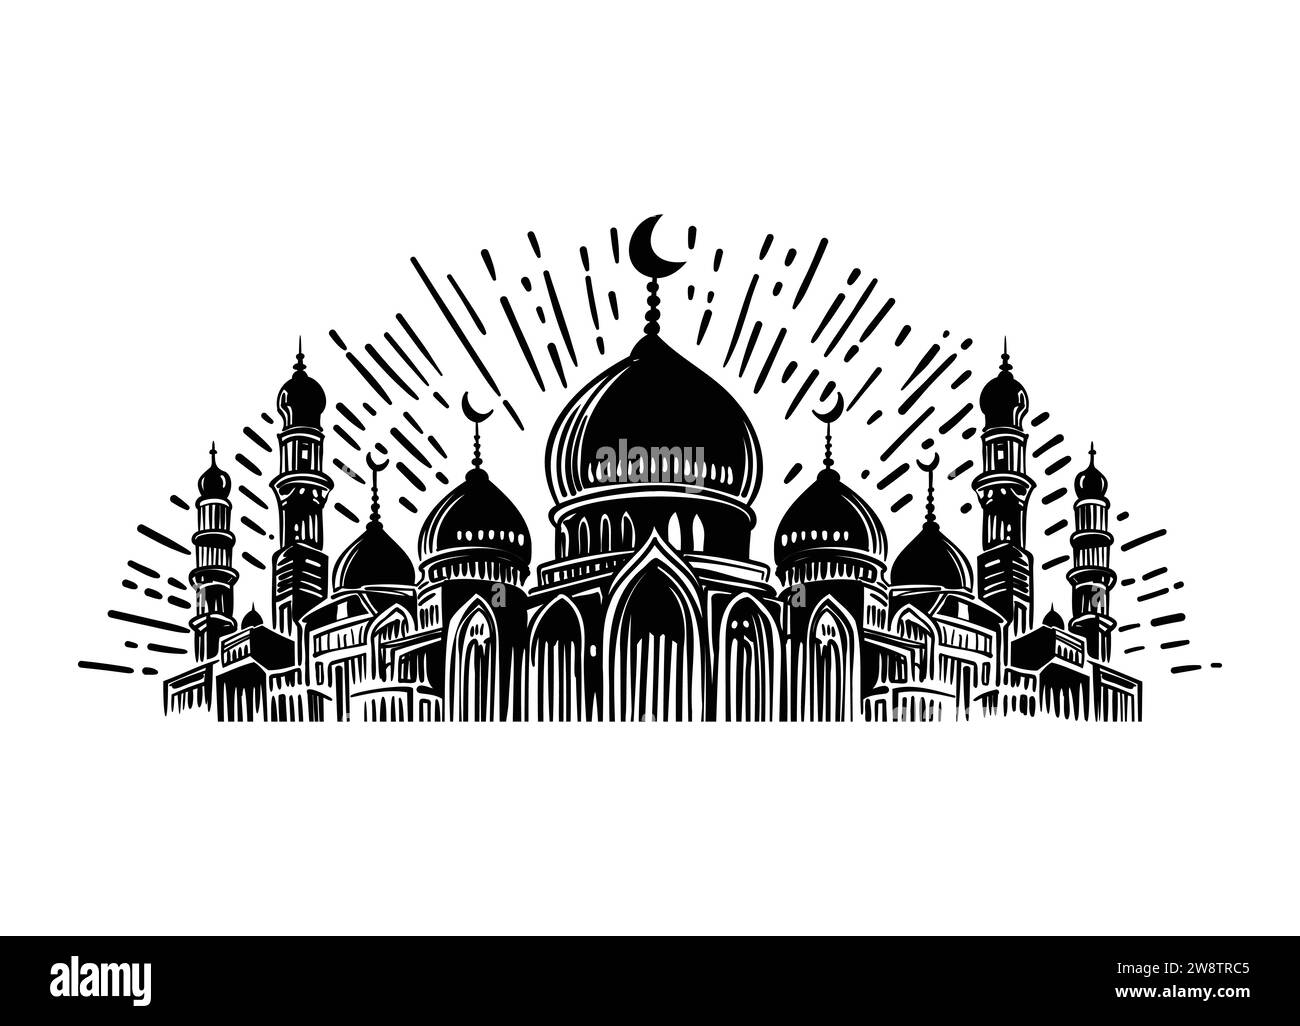 Doodle einer muslimischen Moschee, isoliert auf weißem Hintergrund. Einfache schwarze Konturvektorzeichnung. Skizze in Tinte. Stock Vektor